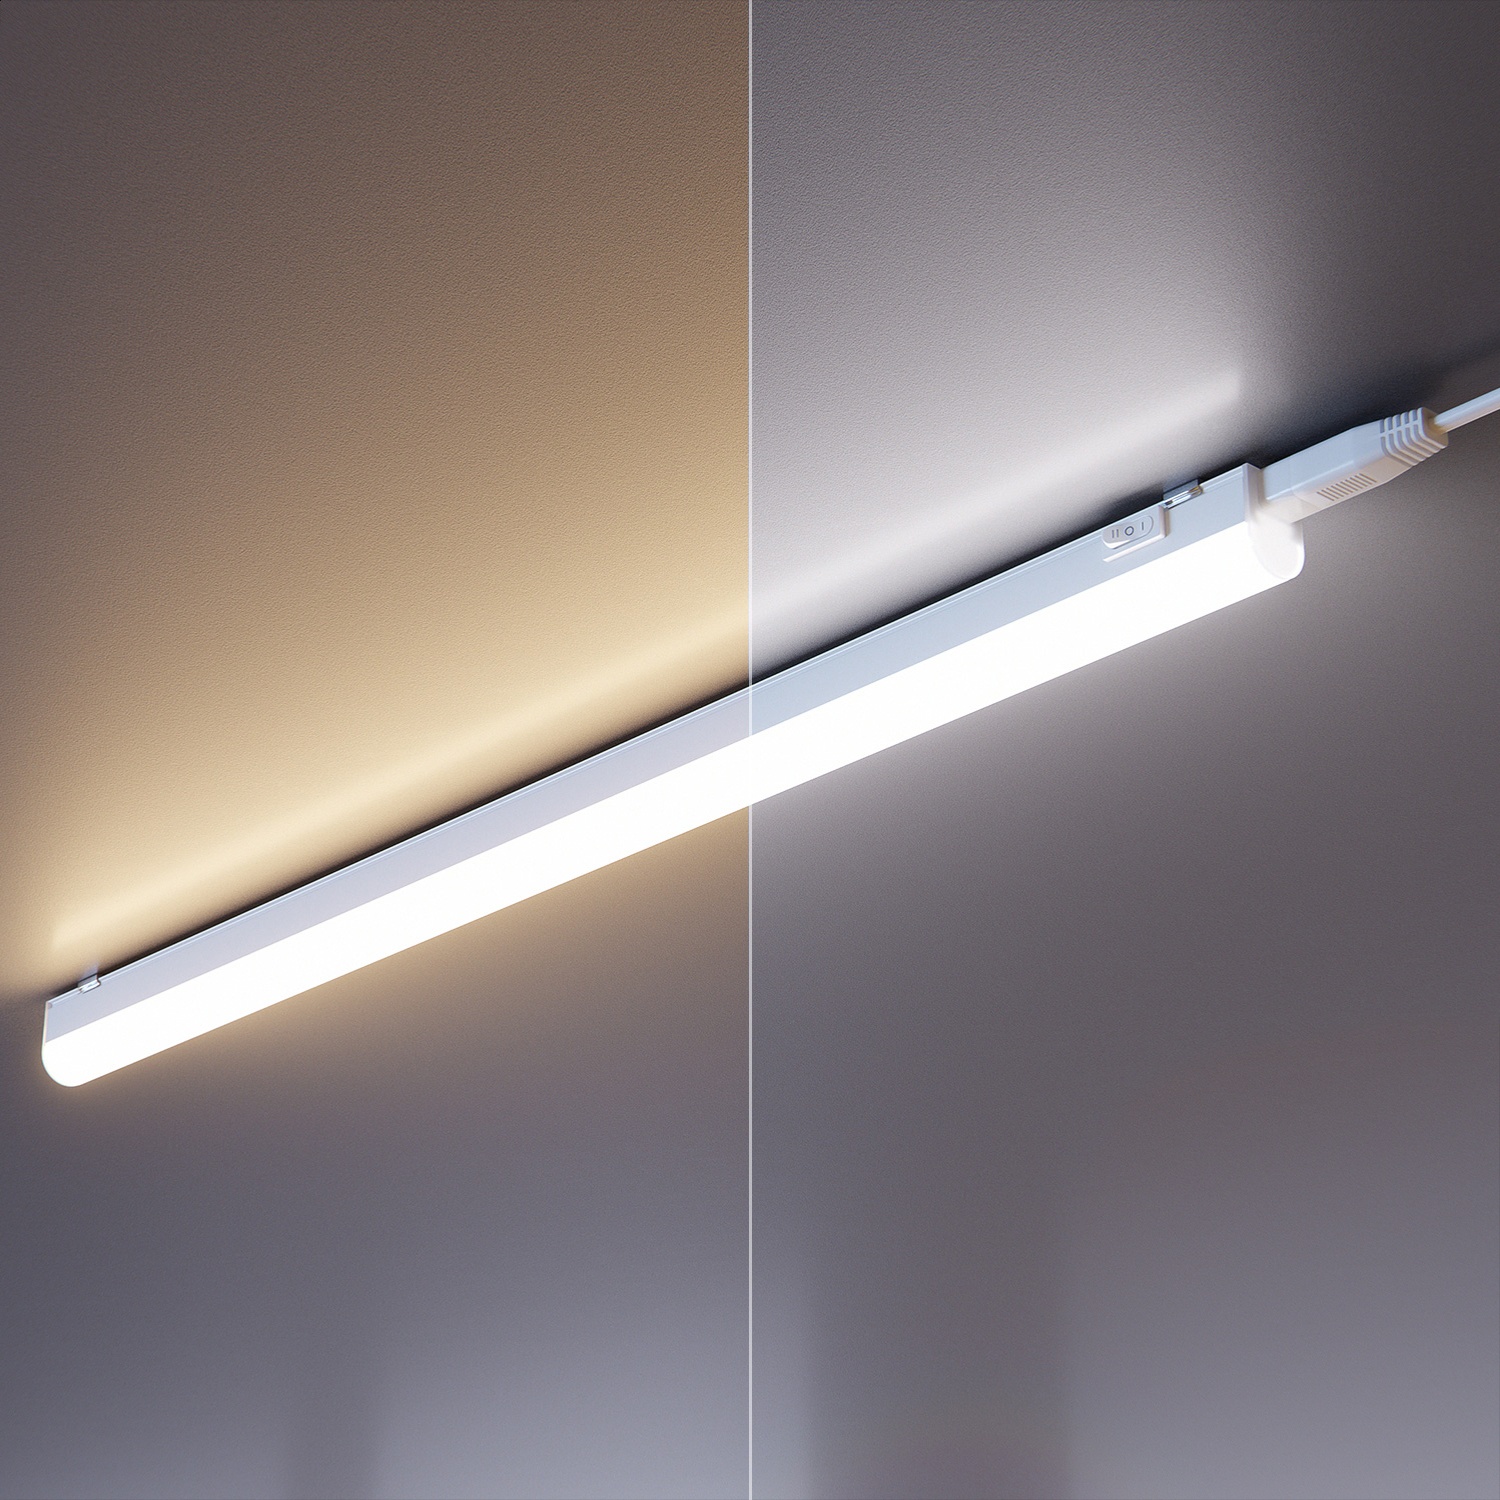 ledscom.de LED Unterbau-Leuchte Rigel, 57,3cm - Farbtemperatur einstellbar /, 8,328W, 830lm